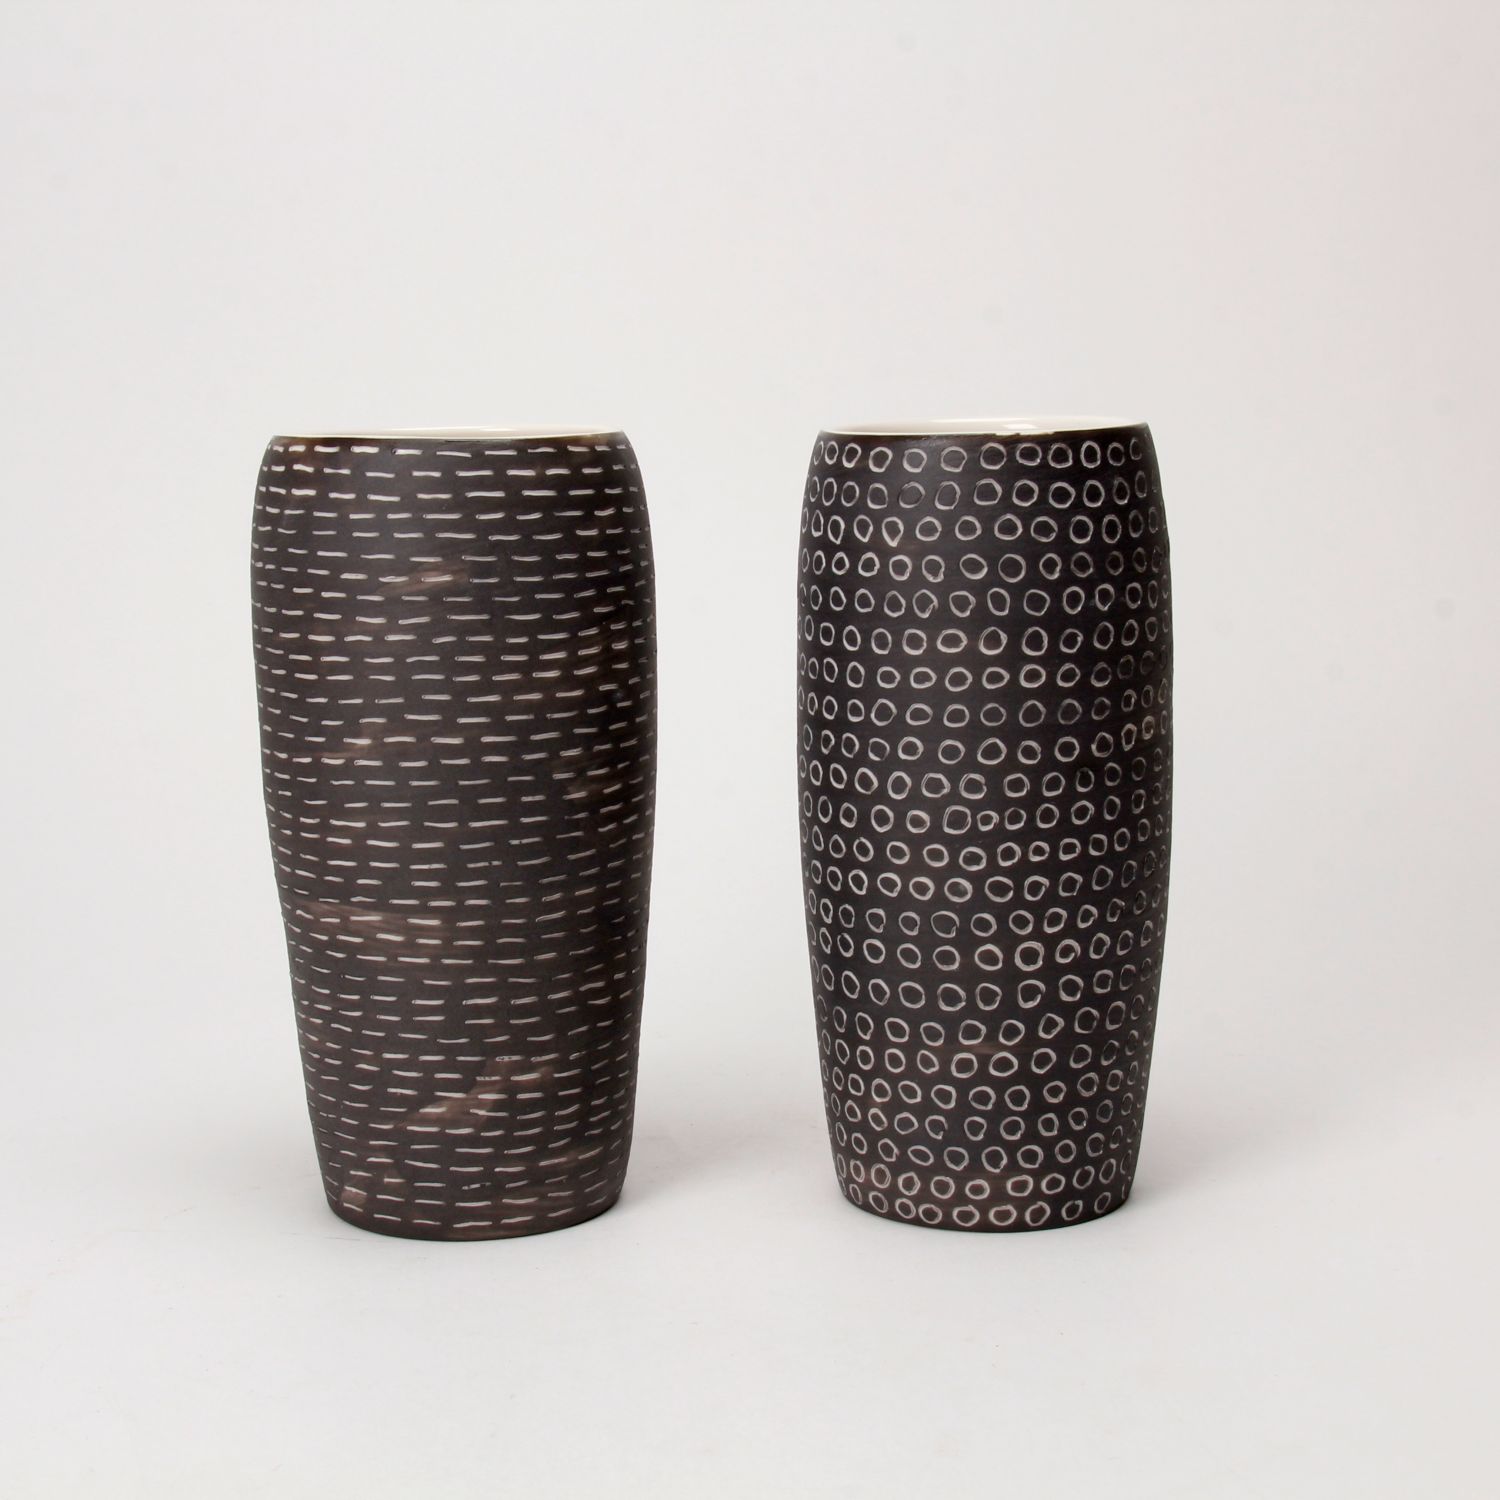 Cuir Ceramics: Traces - Small Rain Vase - Gardiner Museum Shop